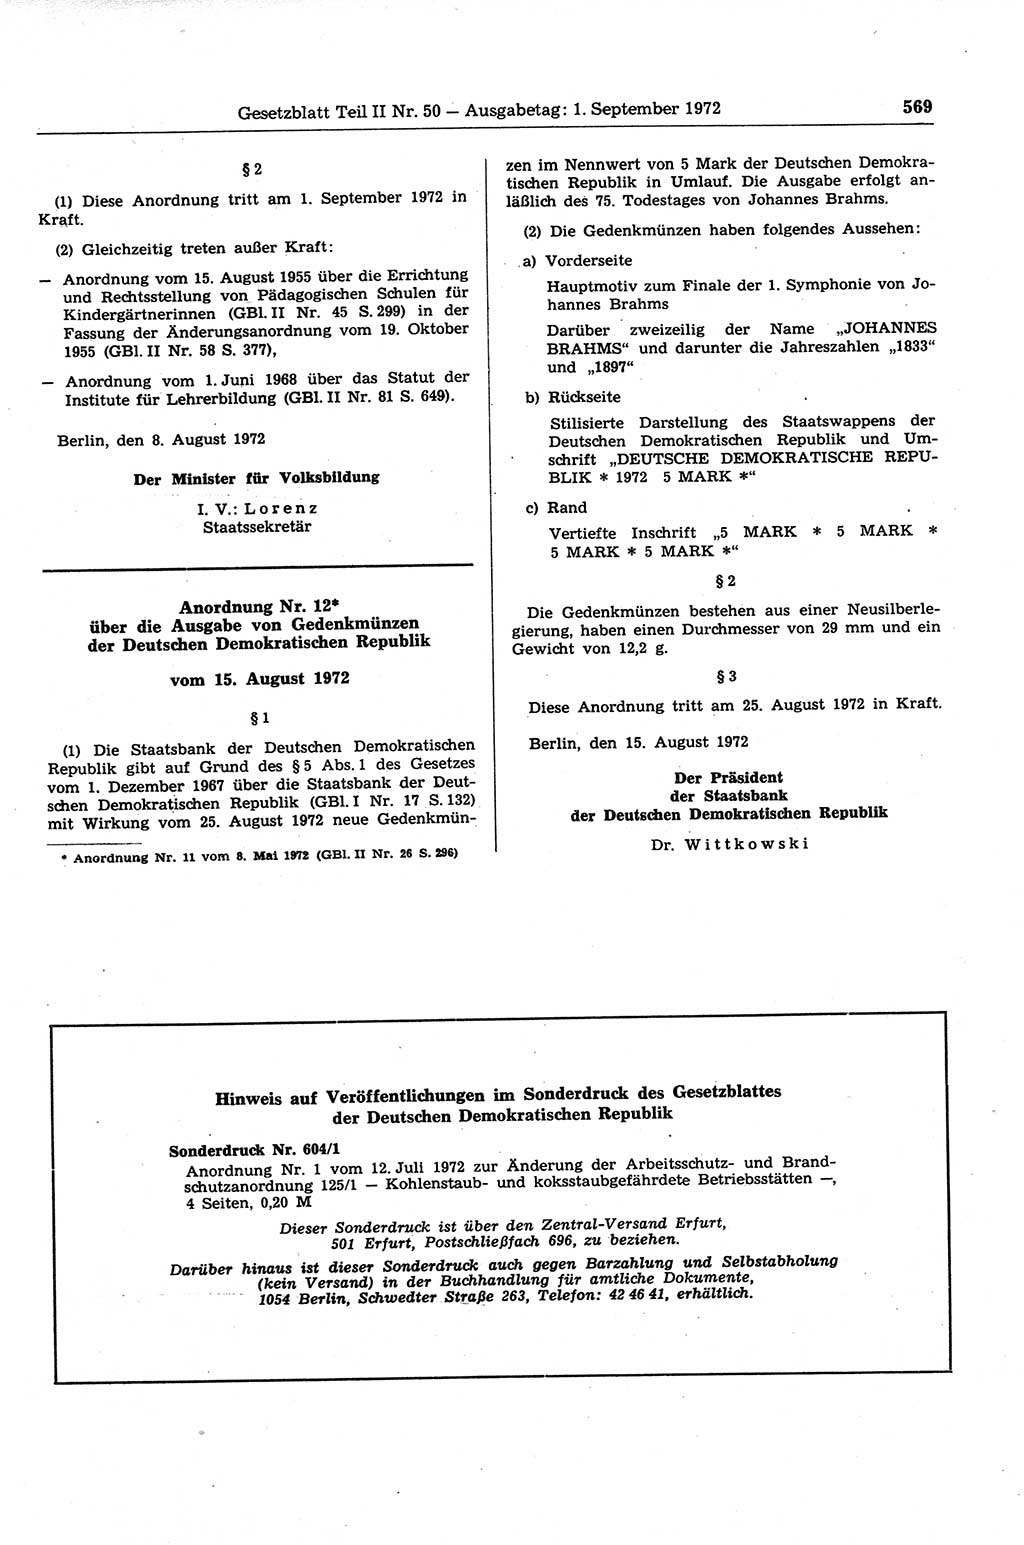 Gesetzblatt (GBl.) der Deutschen Demokratischen Republik (DDR) Teil ⅠⅠ 1972, Seite 569 (GBl. DDR ⅠⅠ 1972, S. 569)